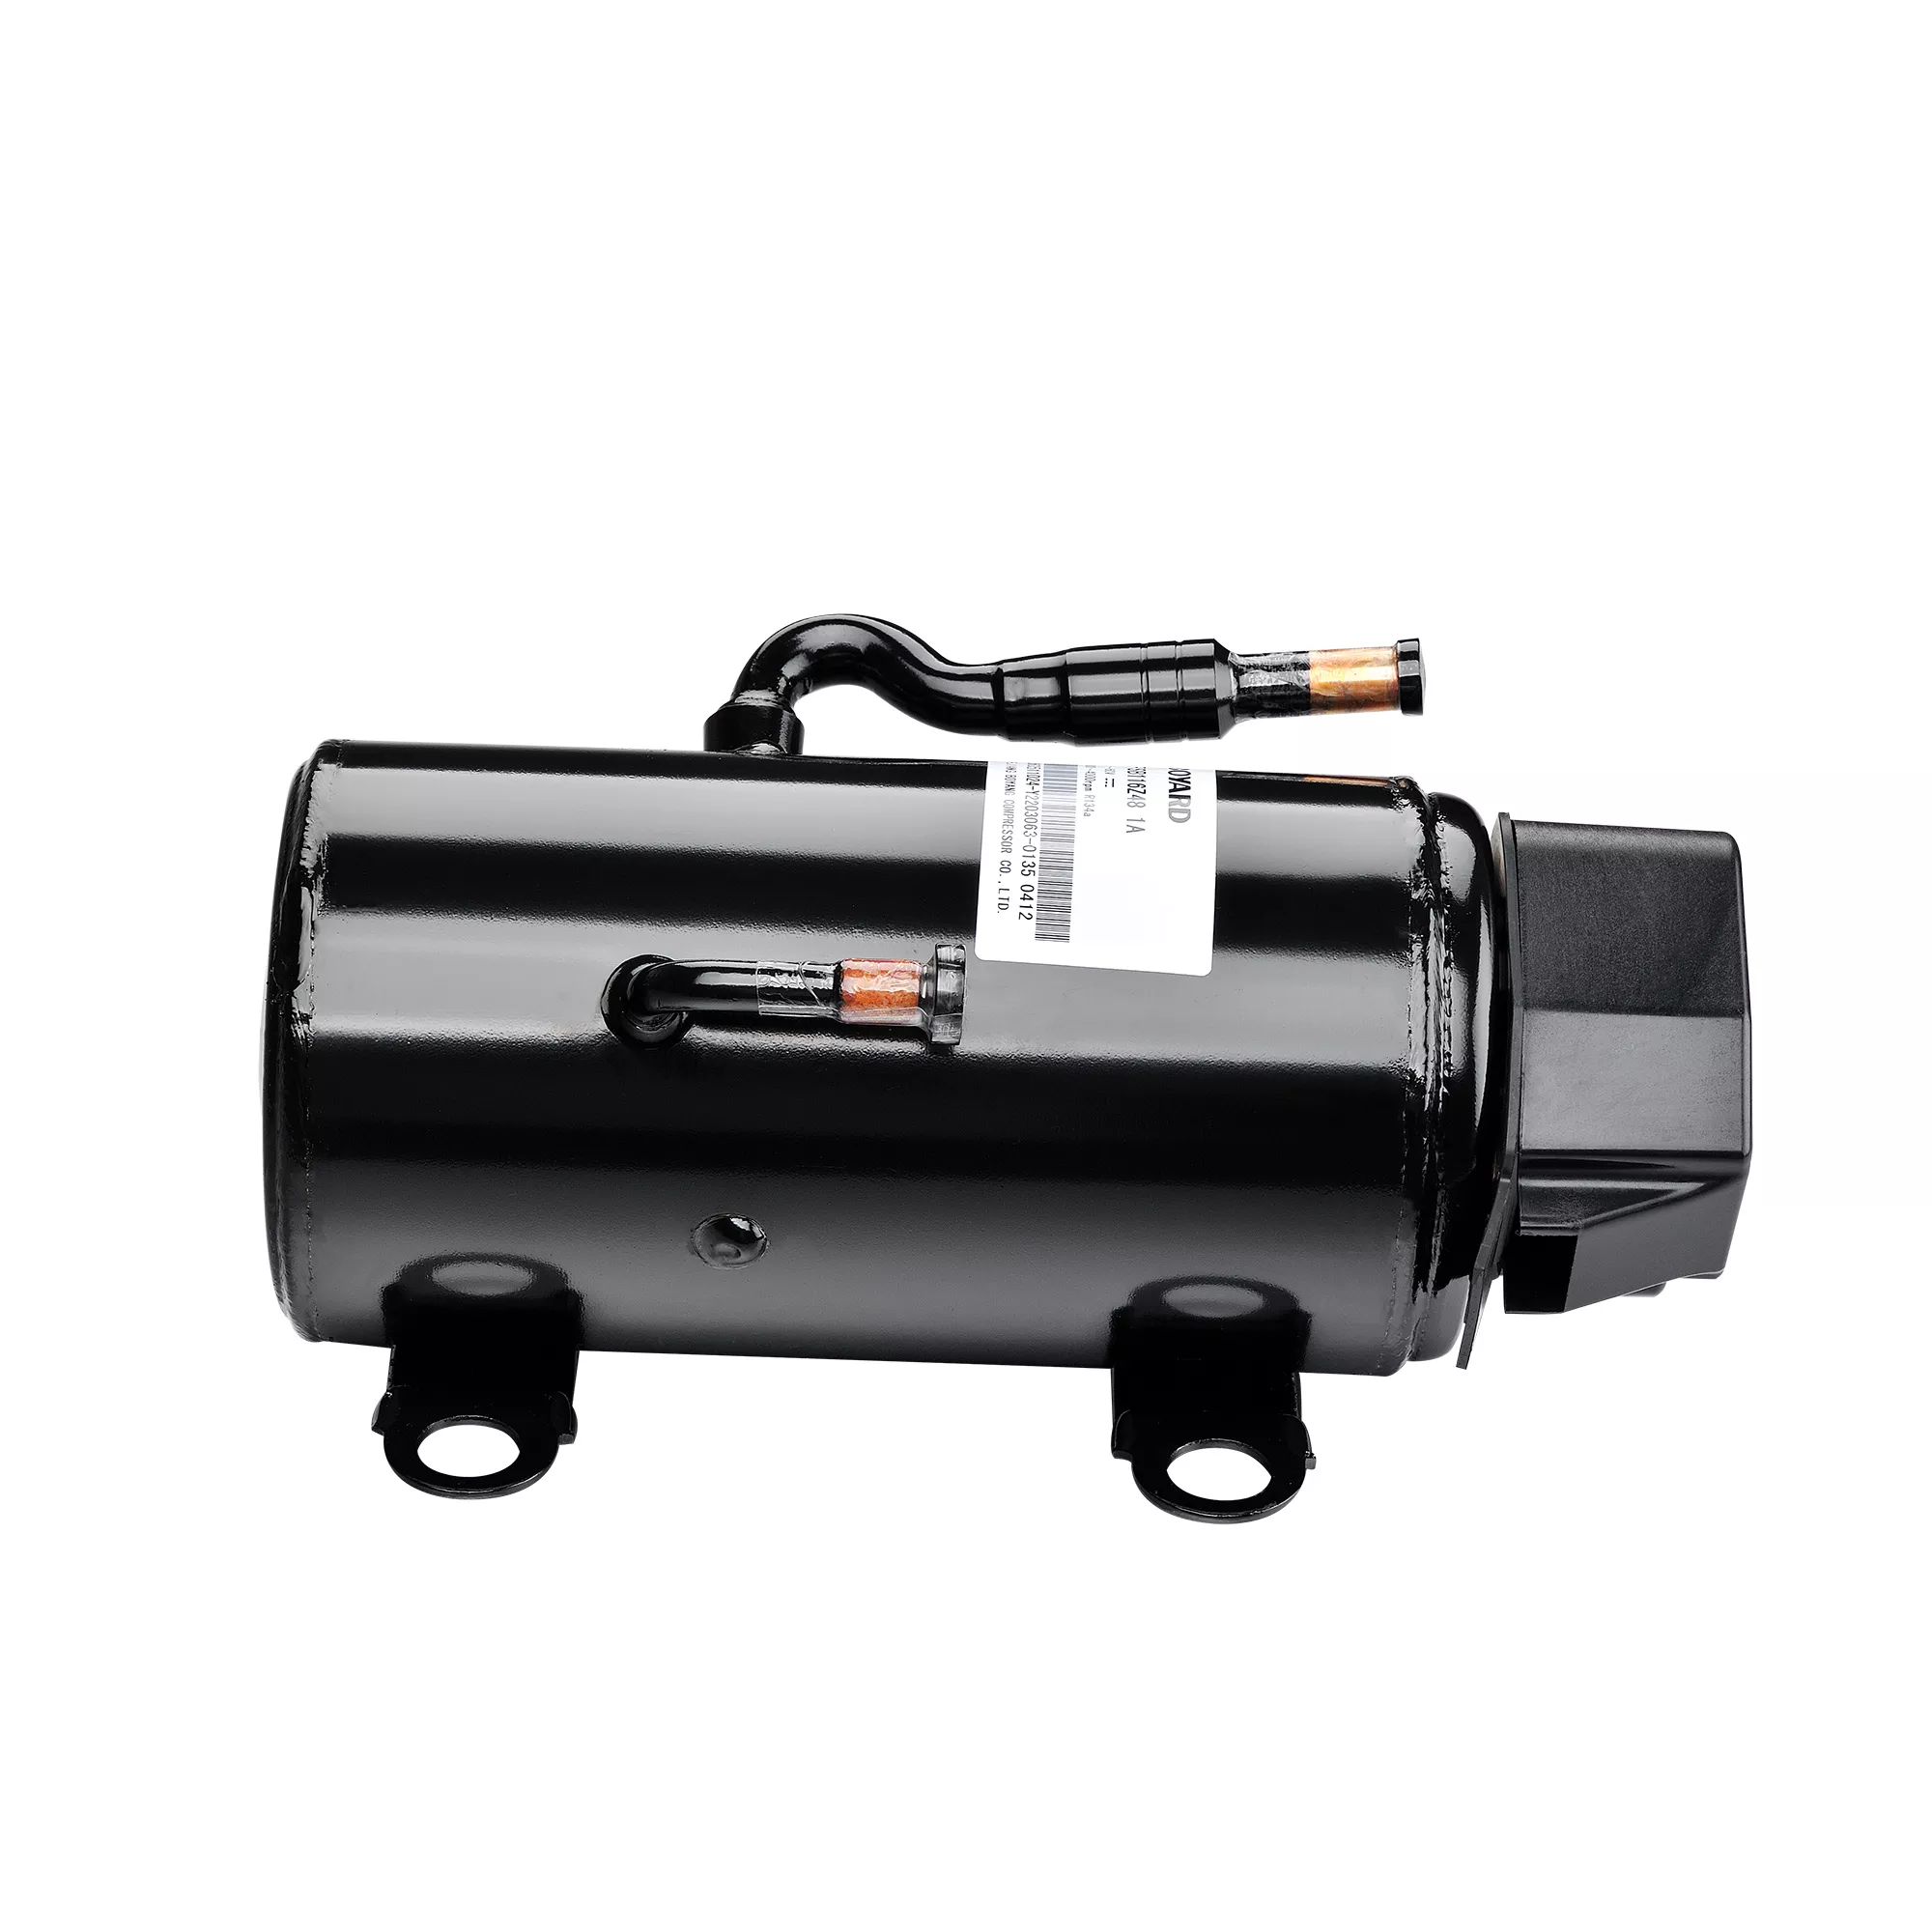 DC 12V Rotary Compressor For Automotive Air Conditioner